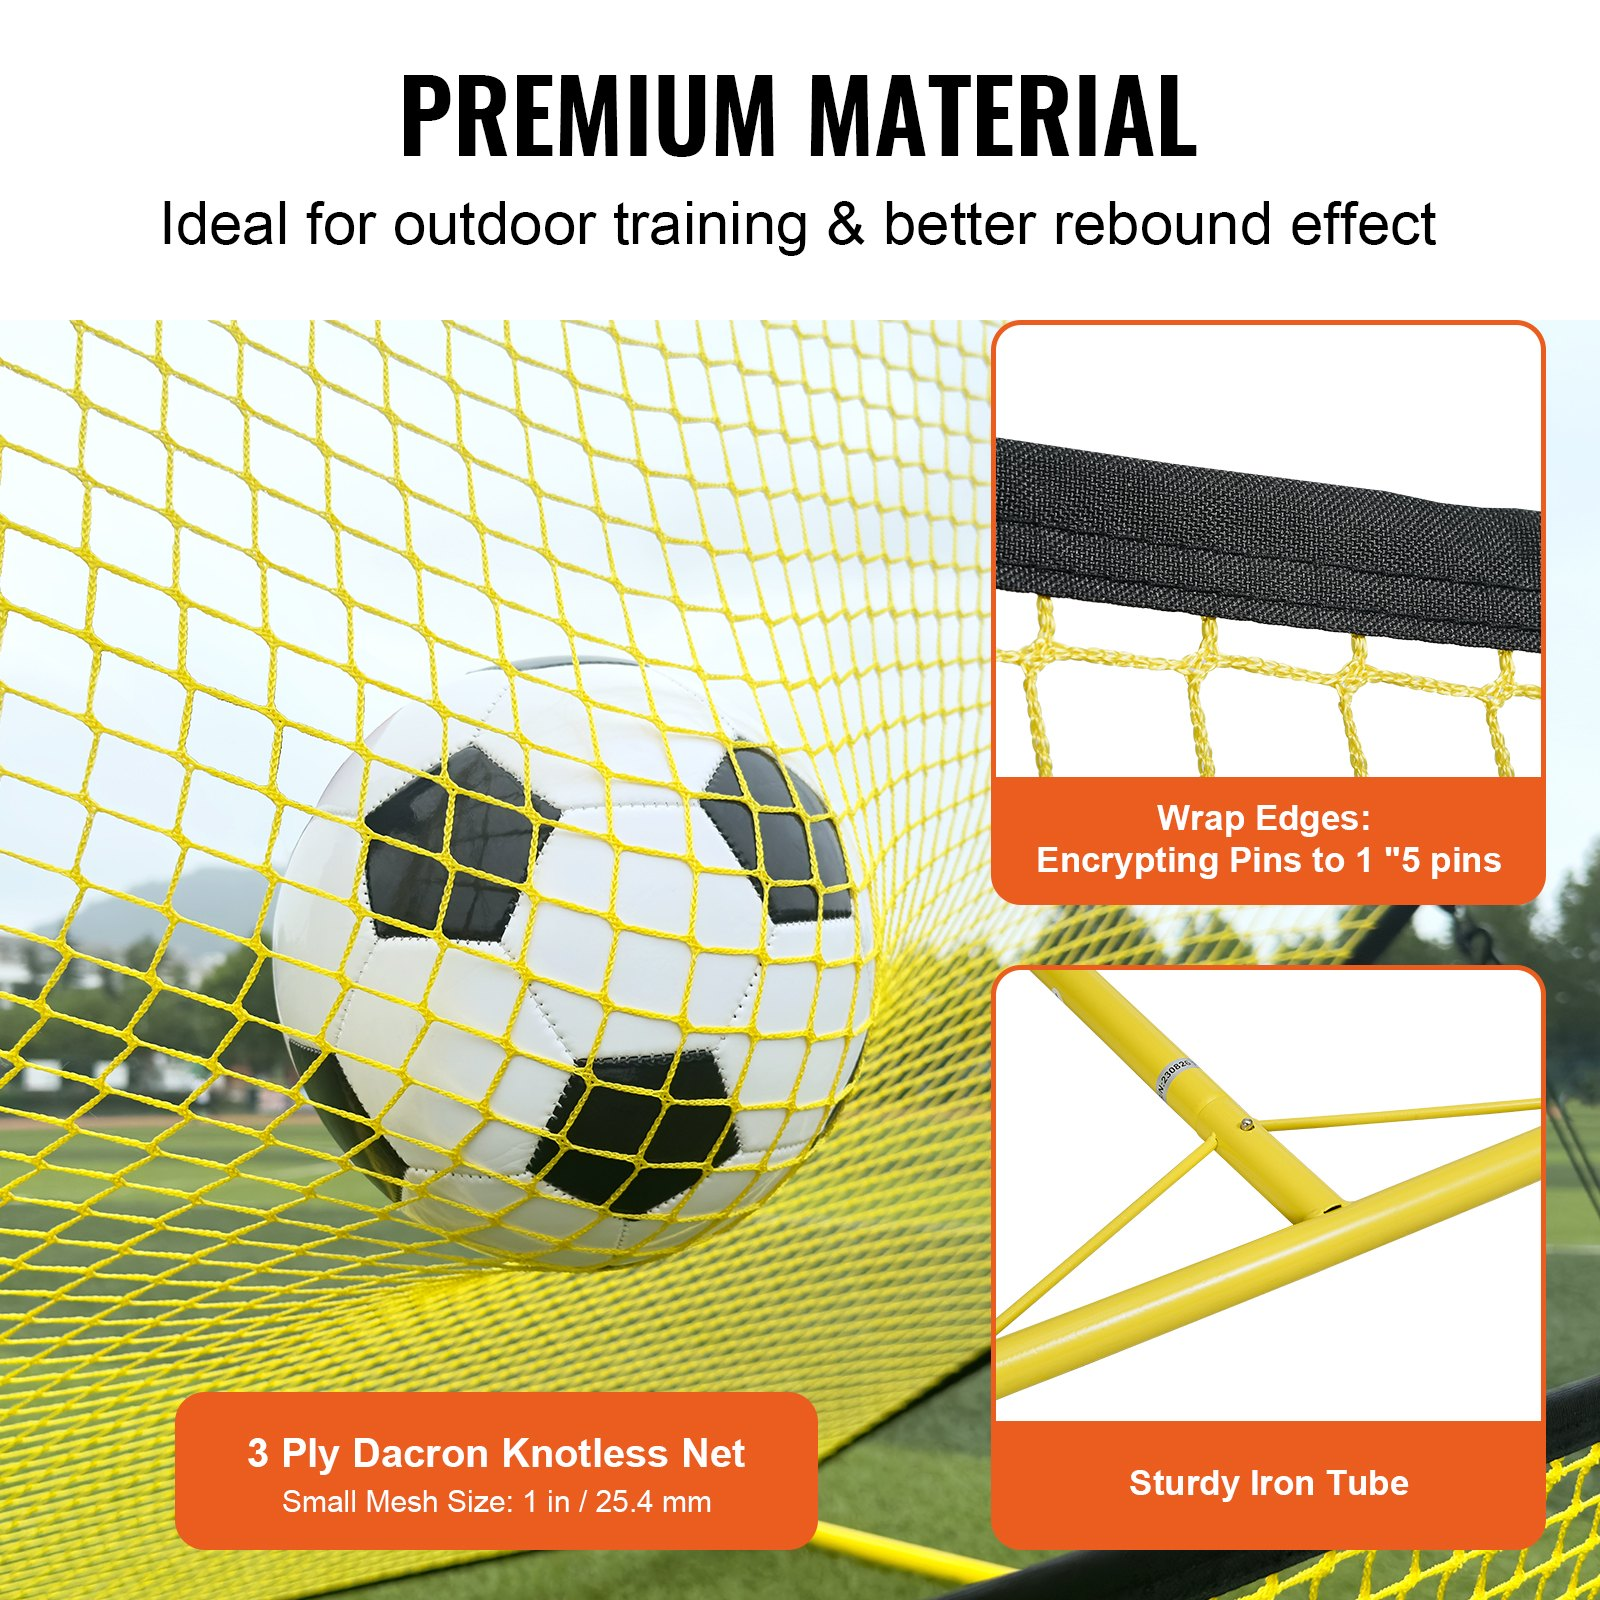 VEVOR Soccer Trainer, 2-IN-1 Portable Soccer Rebounder Net, 71"x40" Iron Soccer Practice Equipment, Goodies N Stuff